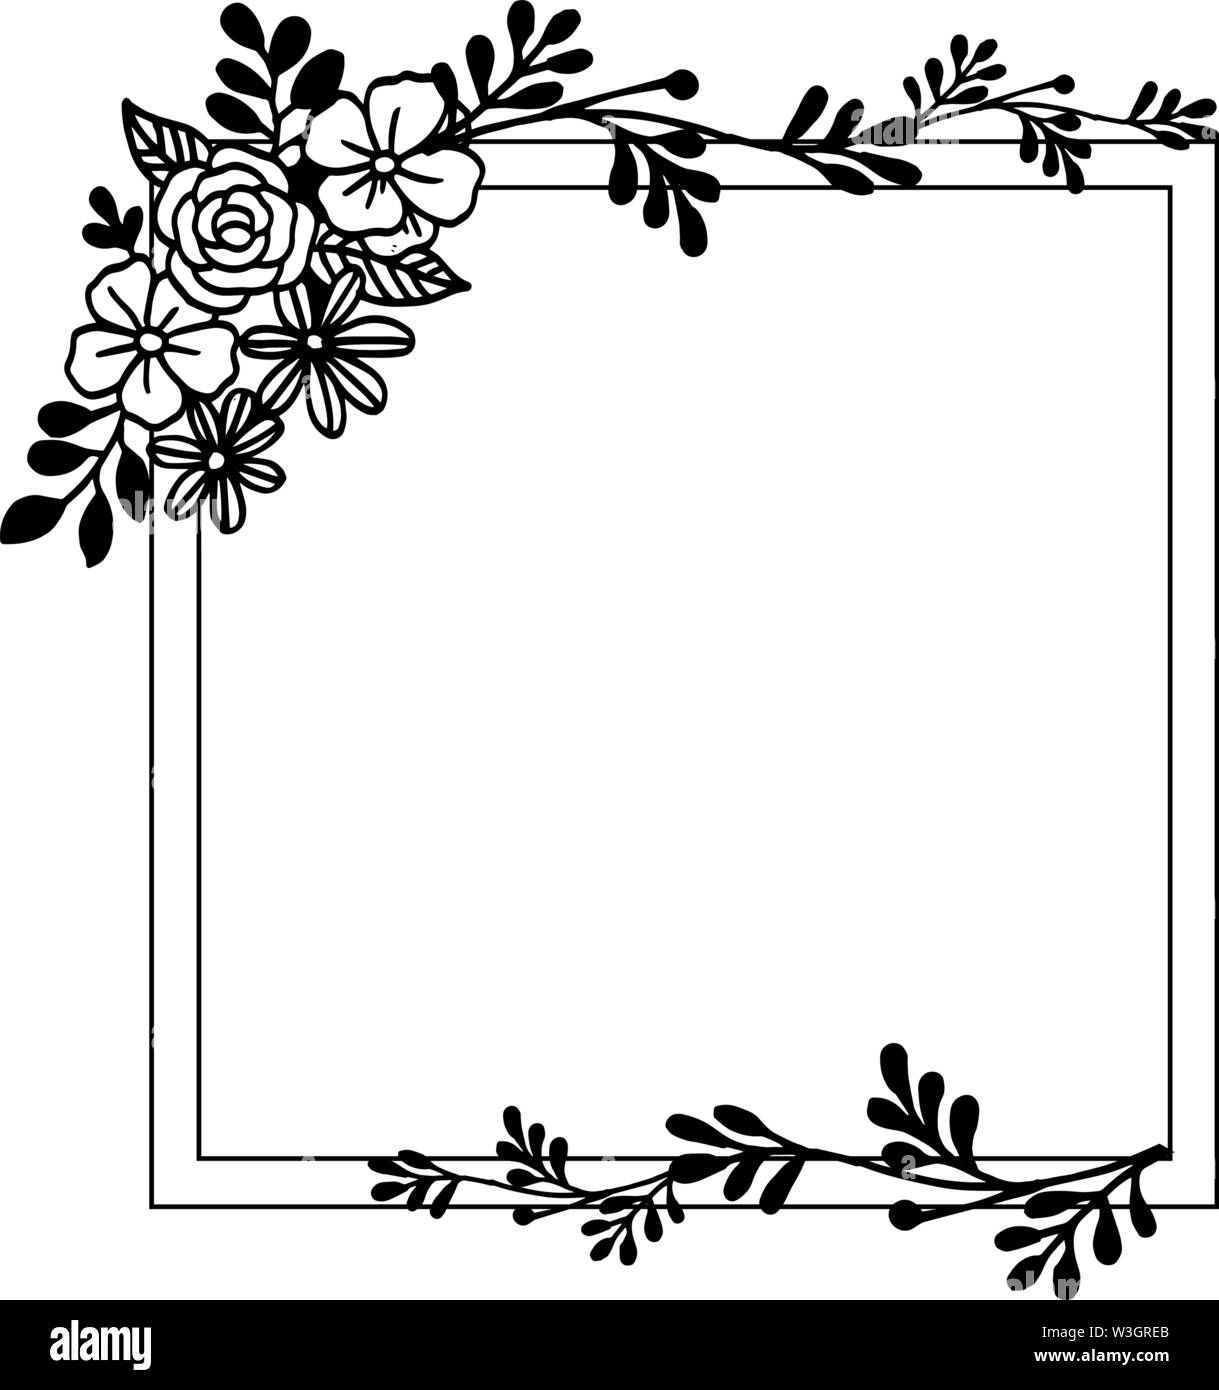 Flower frame decorative border for banner. Vector illustration Stock Vector  Image & Art - Alamy